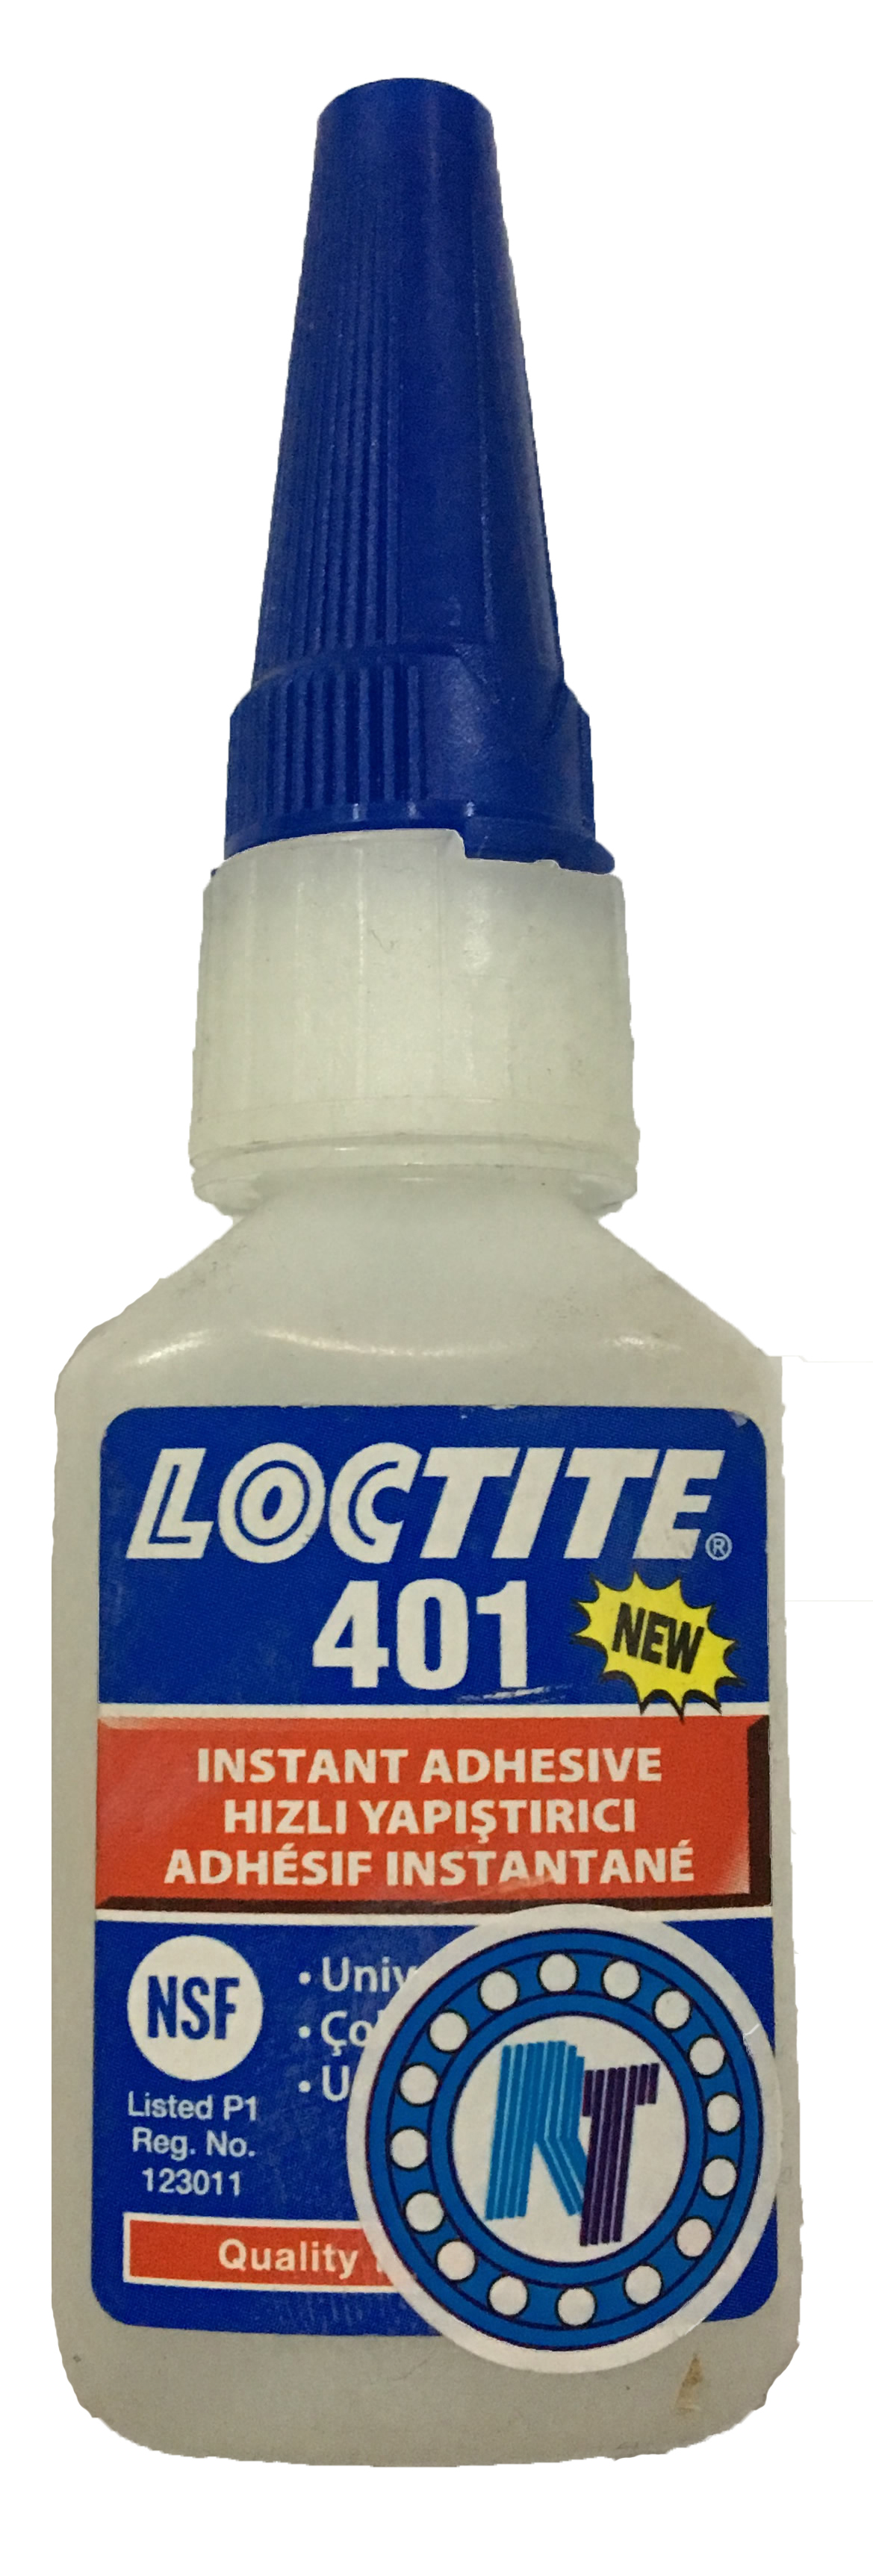 Loctite401,195758,loctite